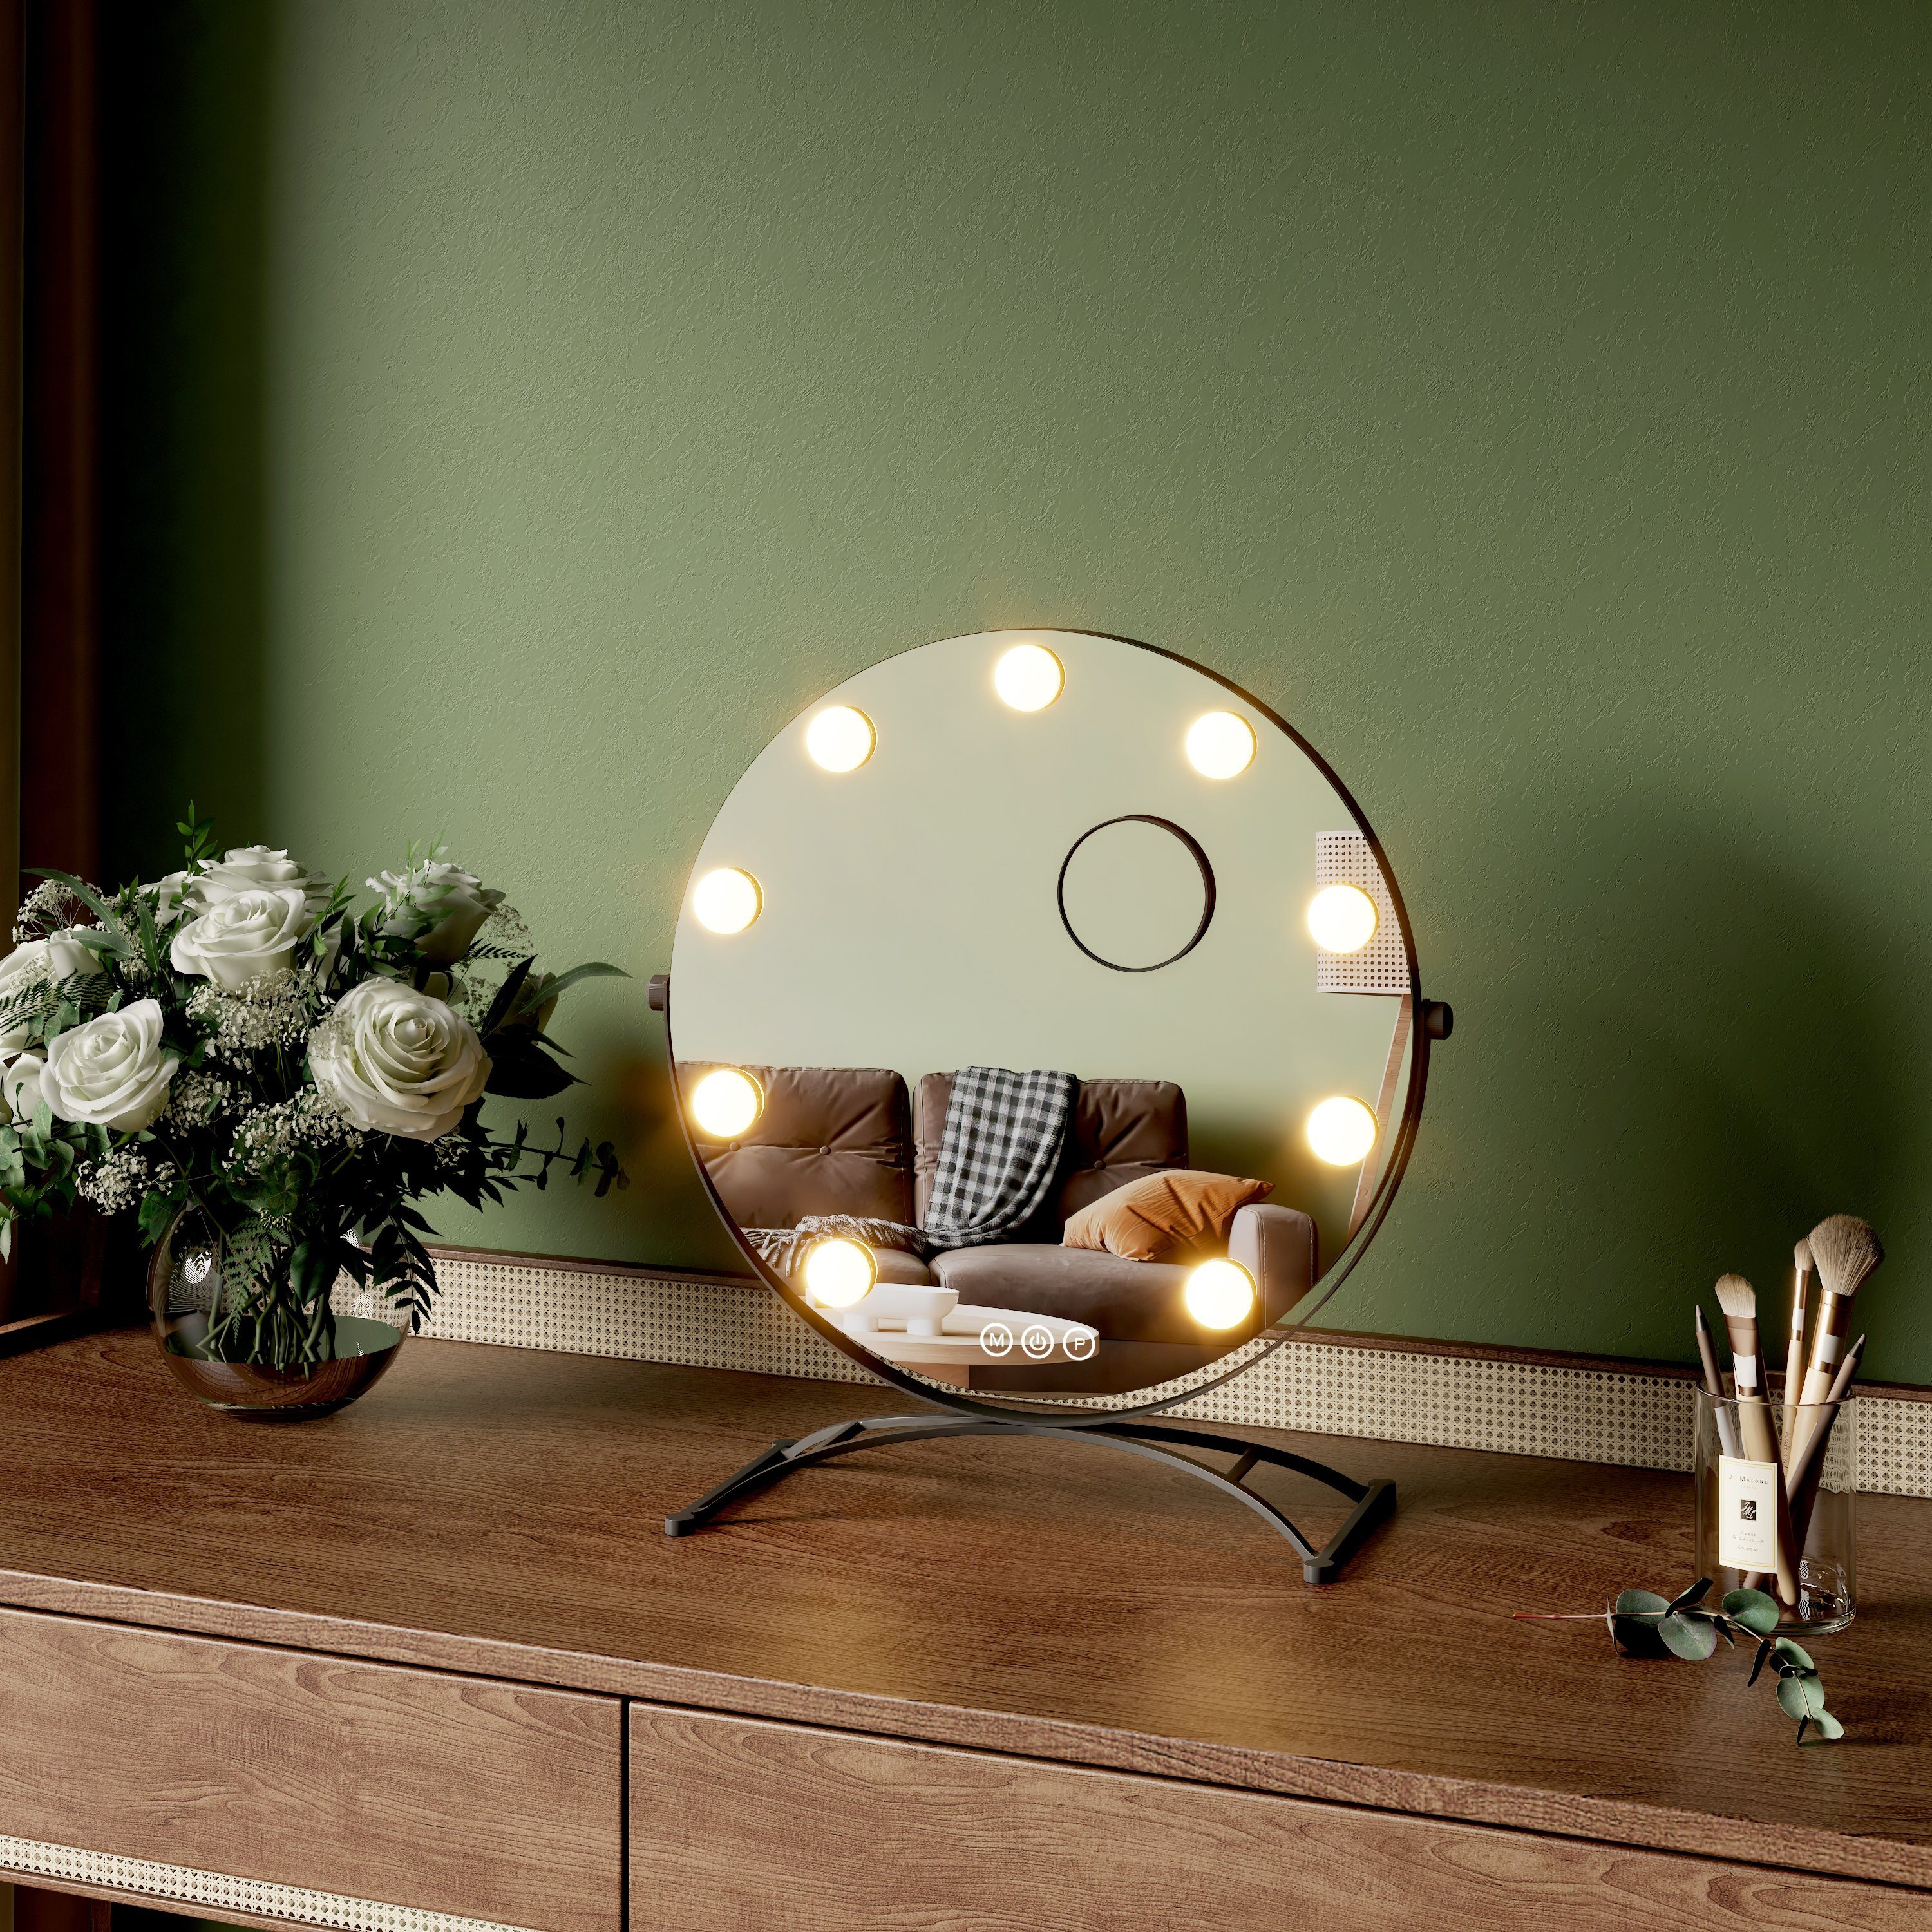 EMKE Kosmetikspiegel Runder Schminkspiegel Hollywood Spiegel mit Beleuchtung Tischspiegel, 3 Lichtfarben,Dimmbar,7 x Vergrößerungsspiegel,360° Drehbar Schwarz